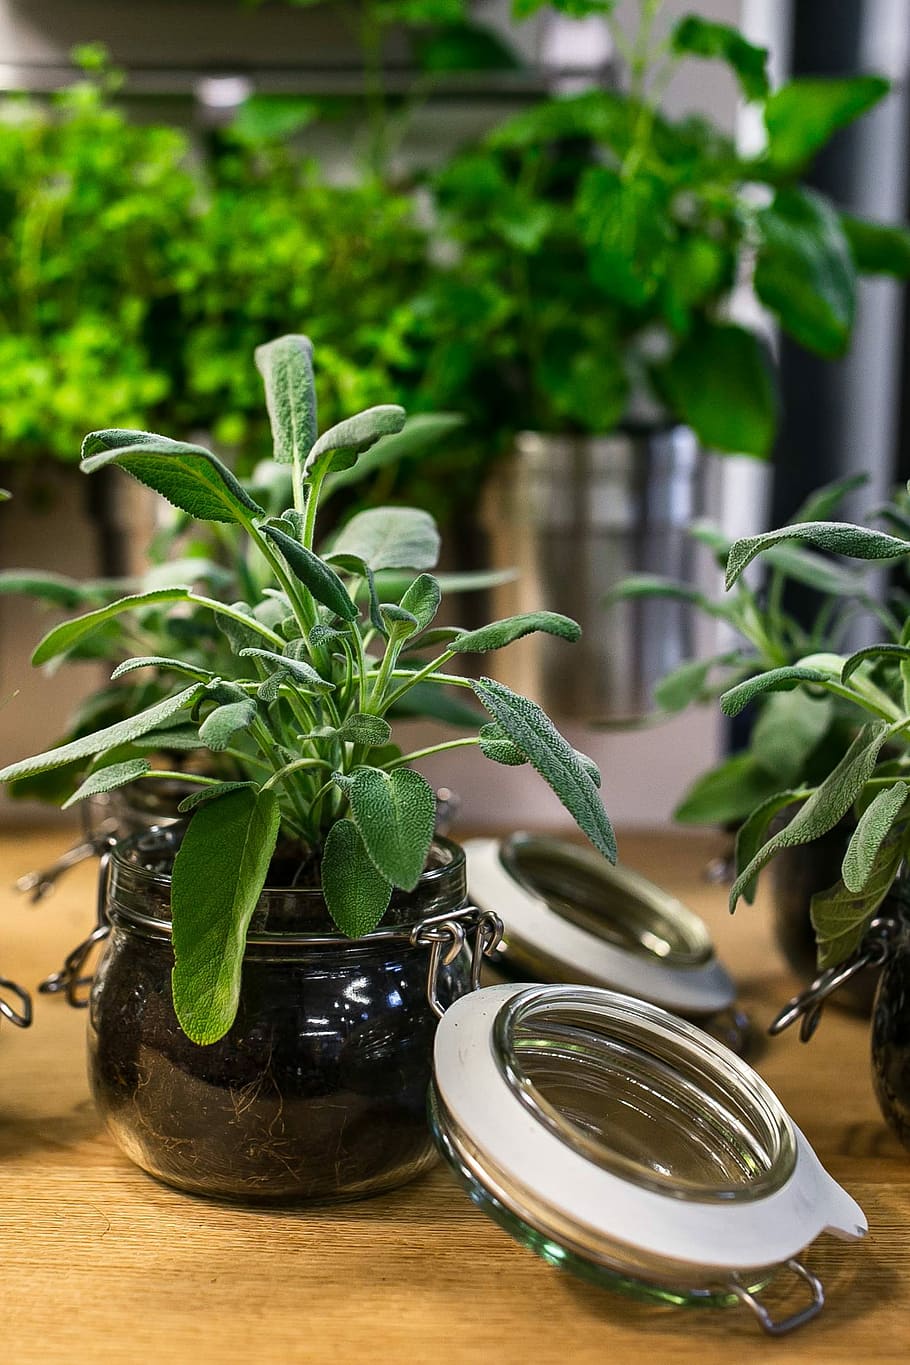 green, plants, glass jars, table, Green plants, plant, pot, jar, leaf, food